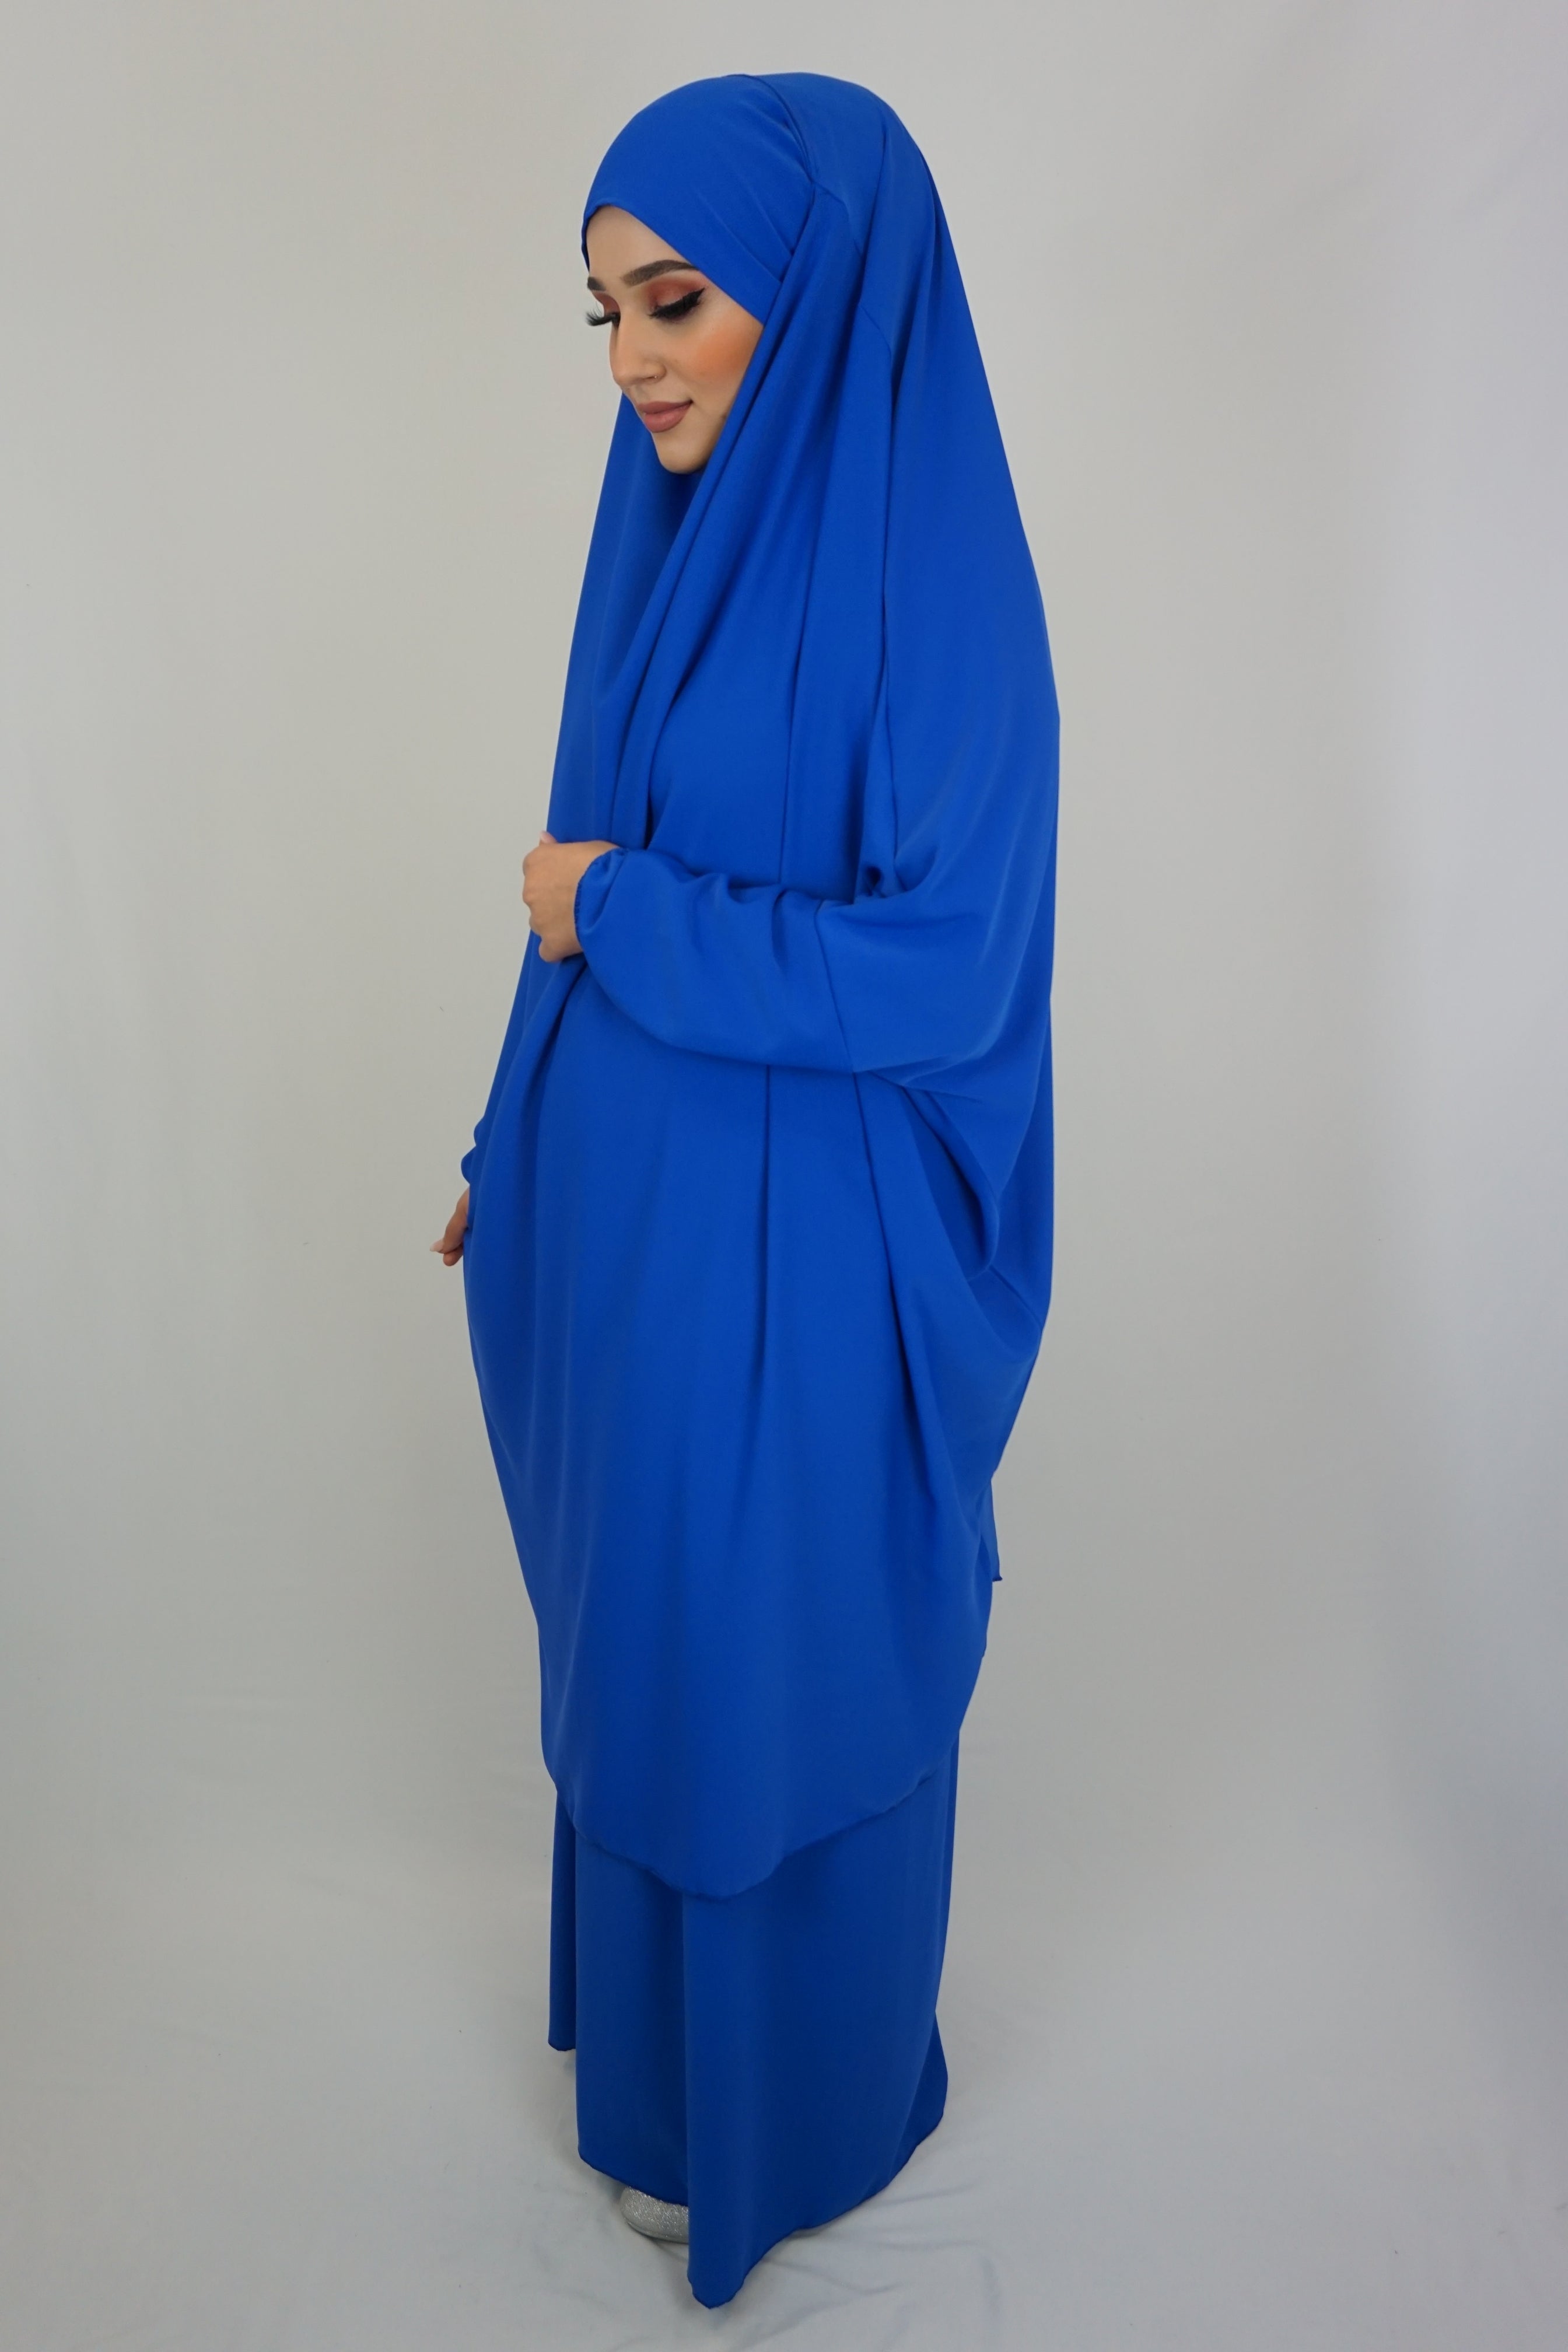 Jilbab Farheena Blau